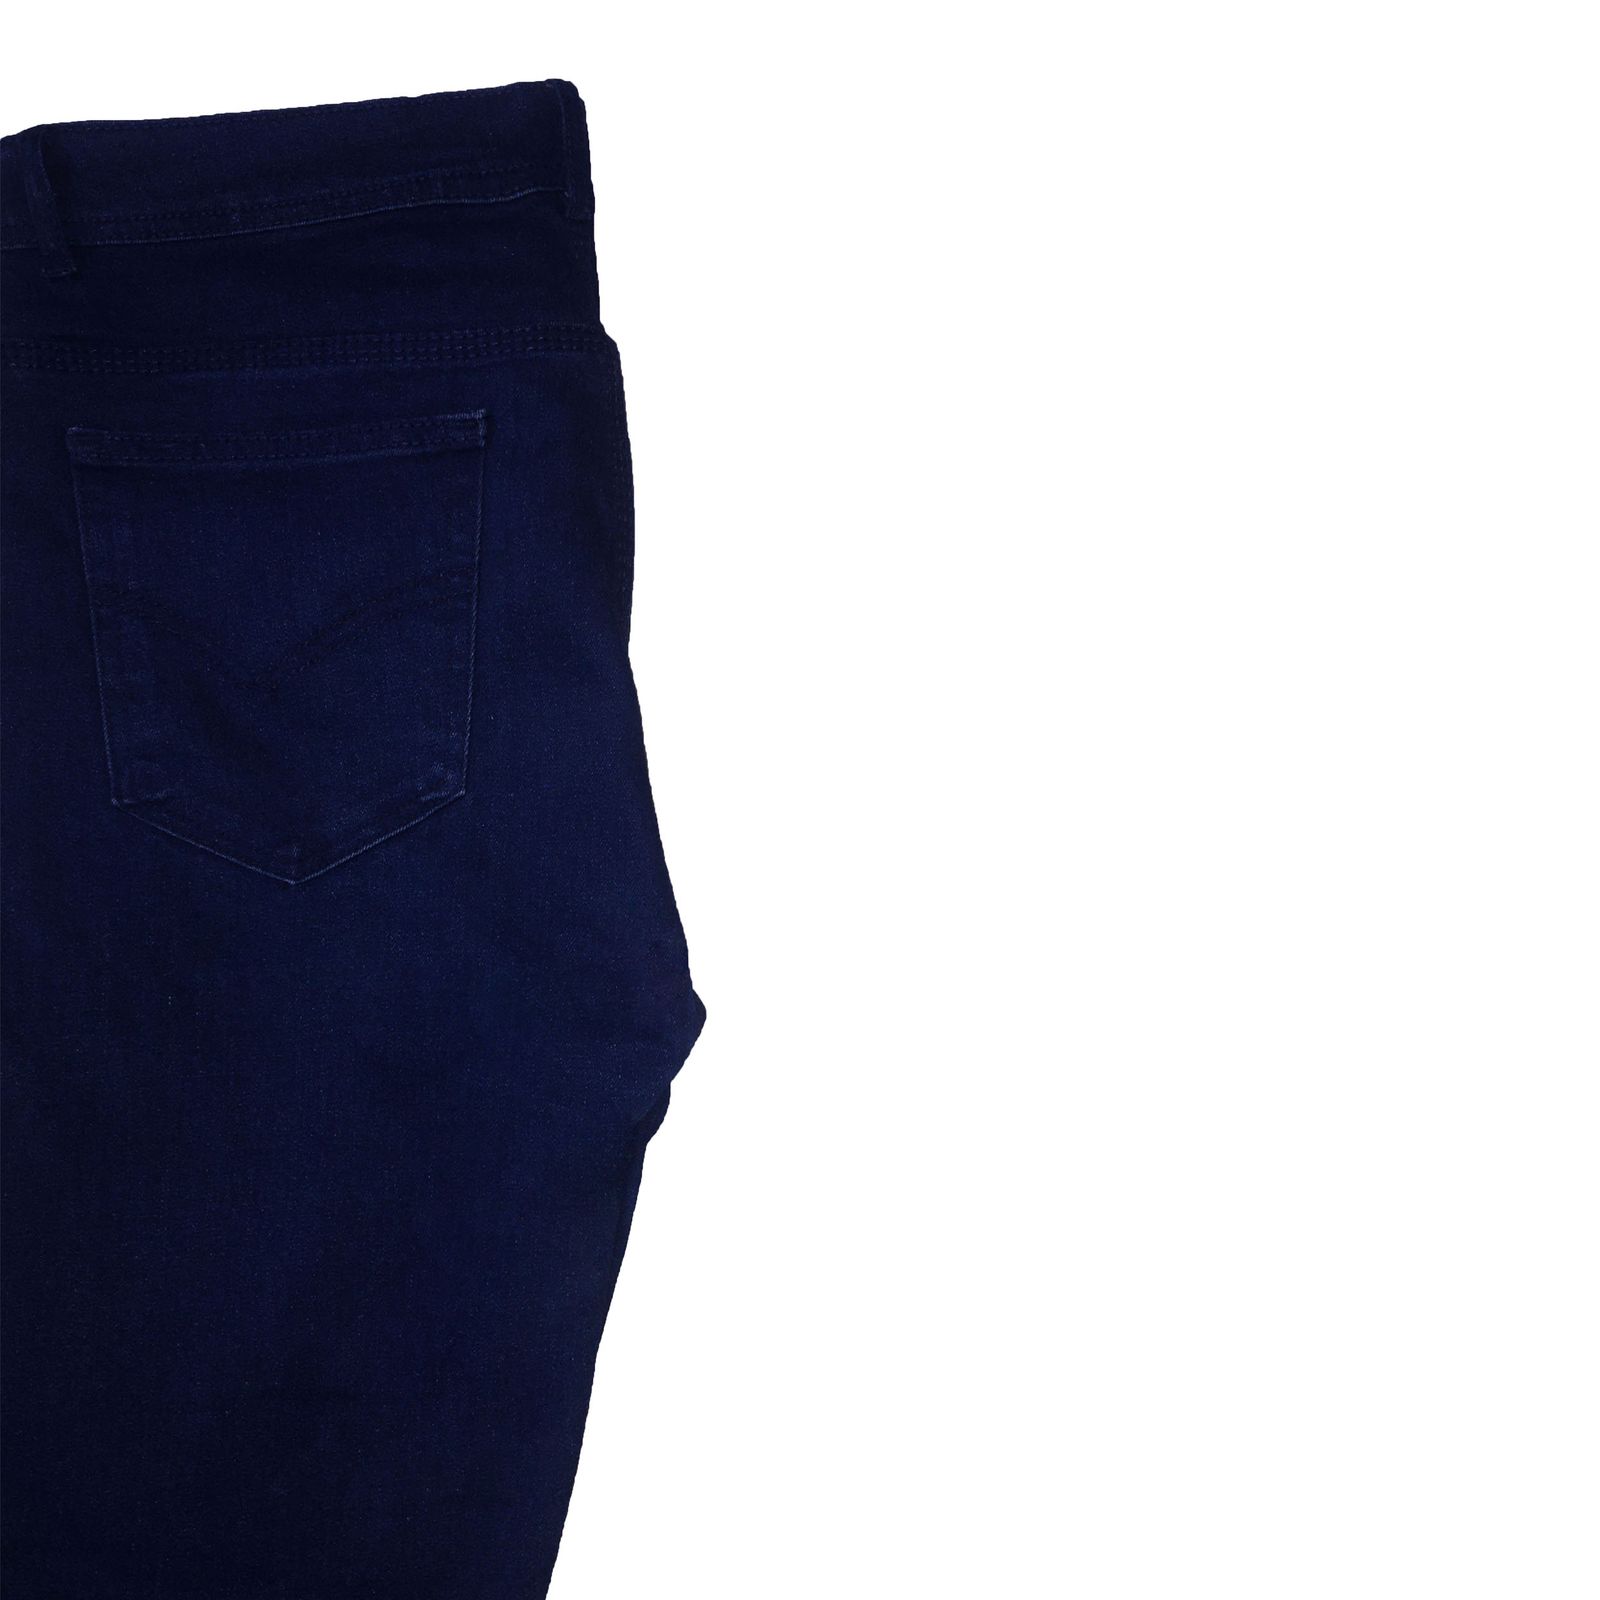 شلوار جین مردانه مدل W01401 -  - 5